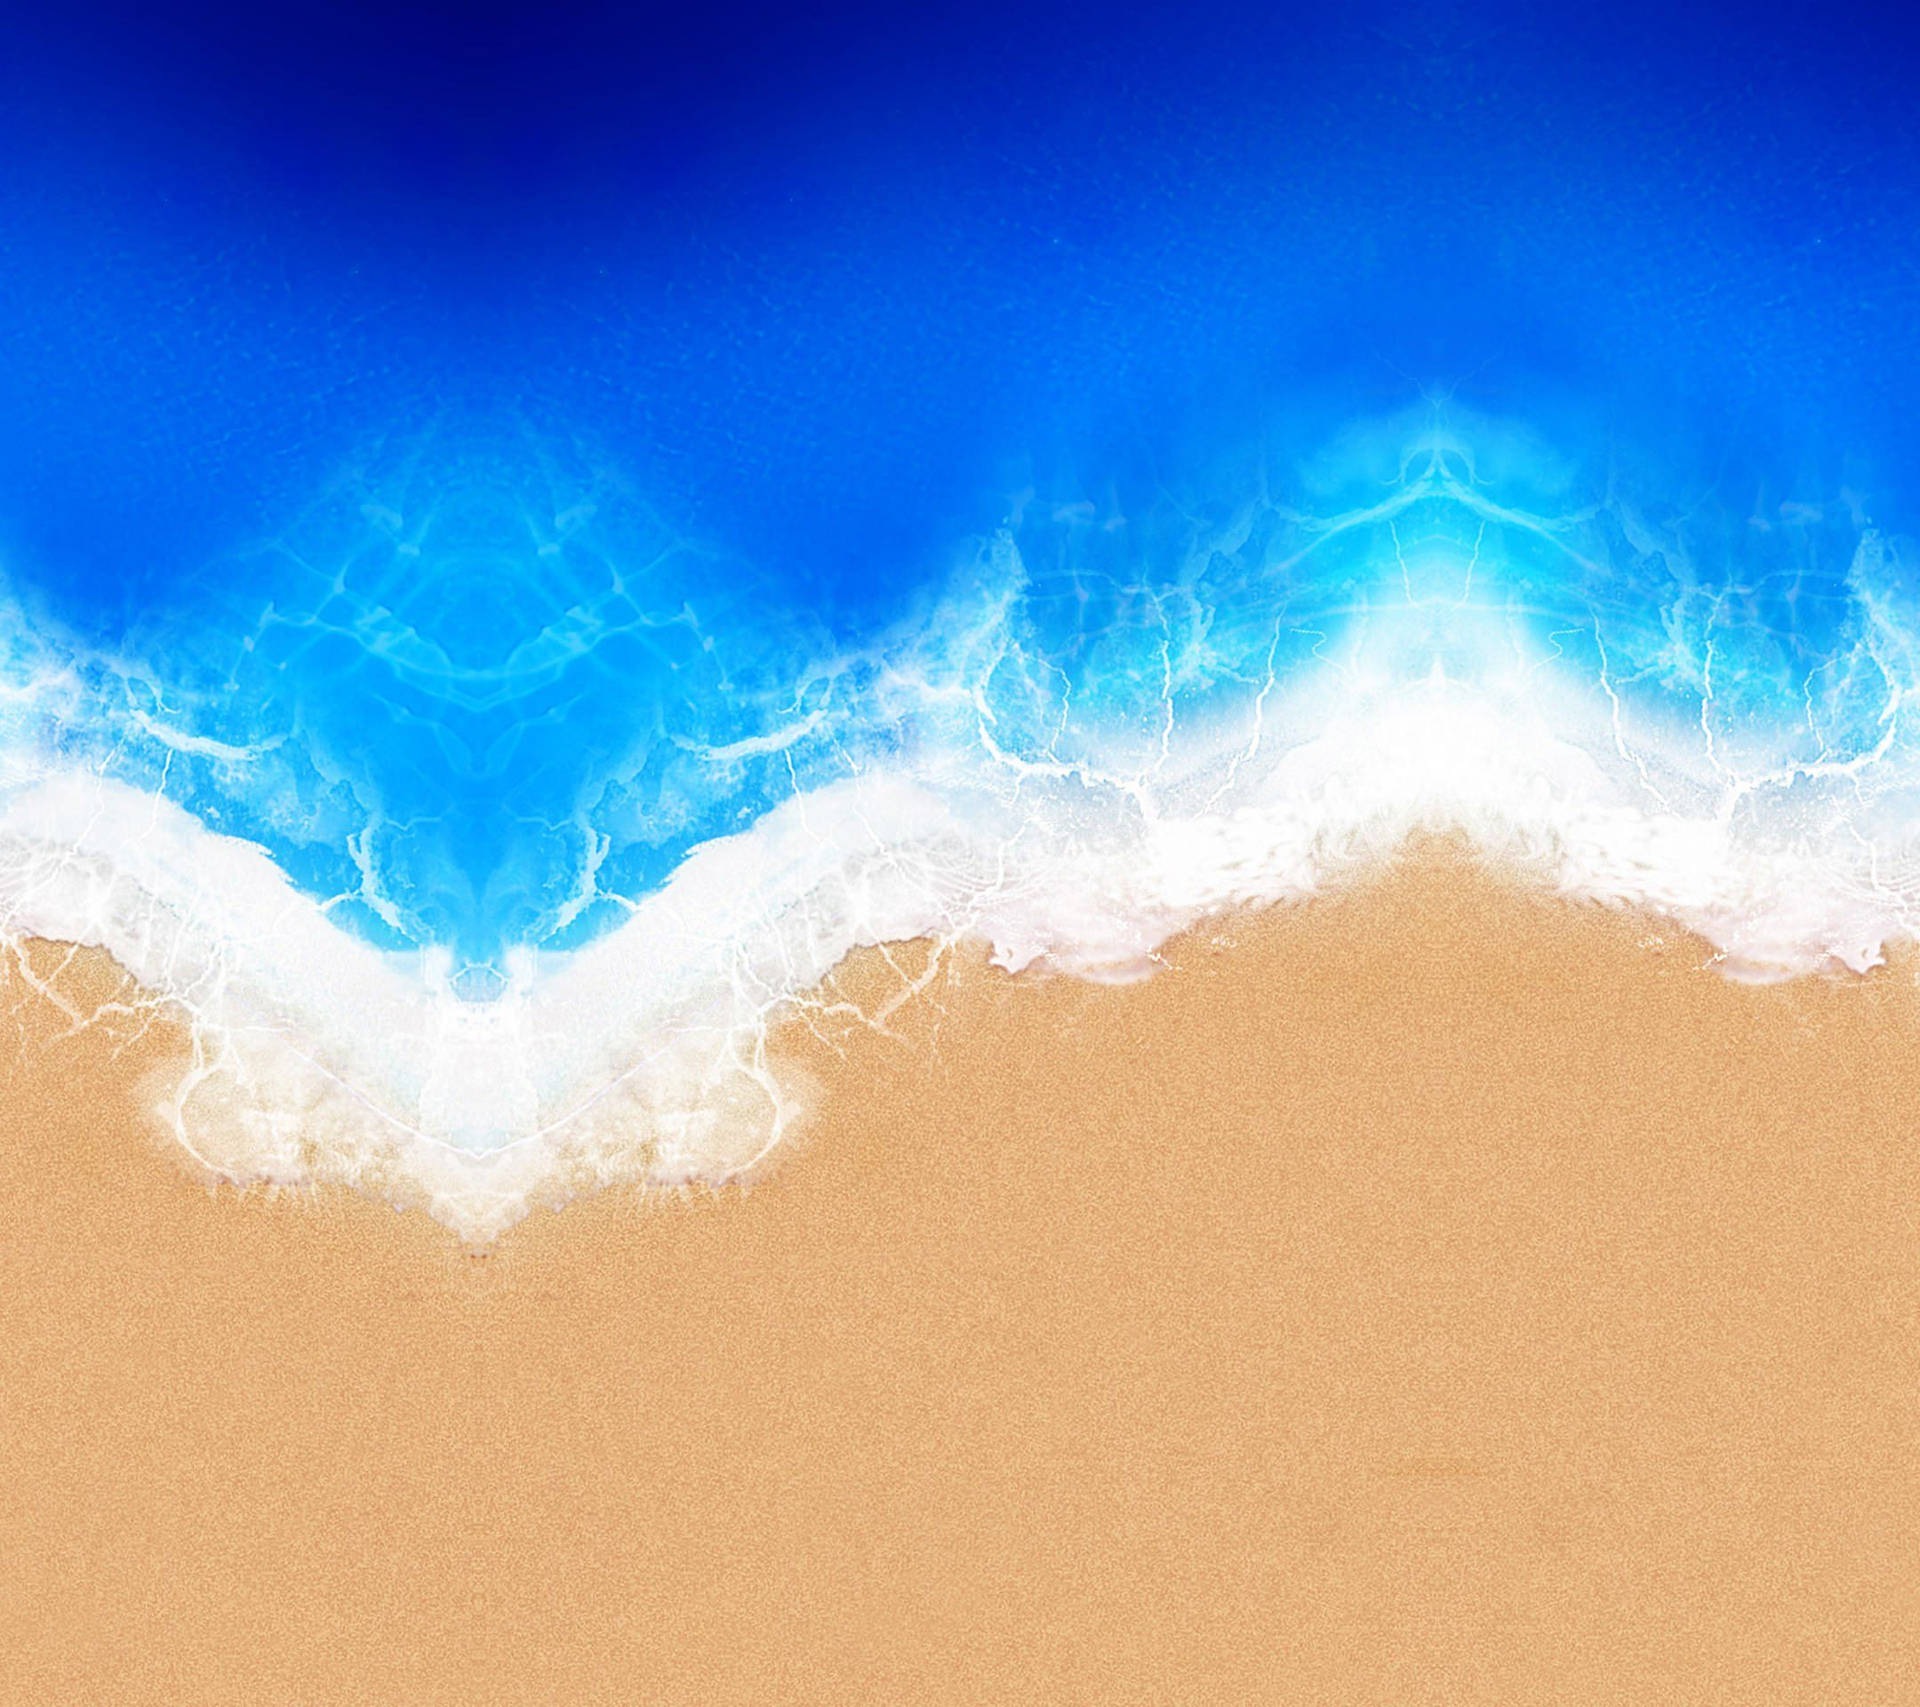 Vistaaérea Qhd De Um Oceano Azul. Papel de Parede